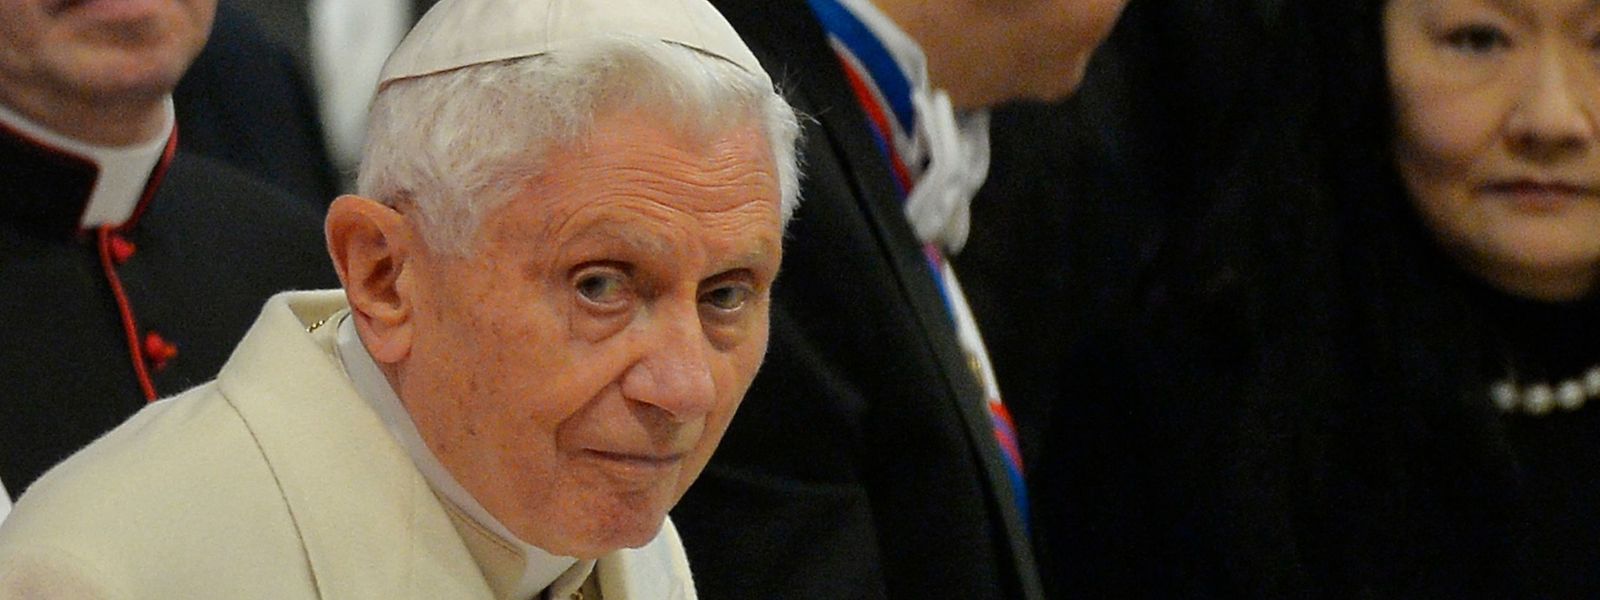 Der emeritierte Papst Benedikt XVI. wird von einem neuen Missbrauchsgutachten schwer belastet.